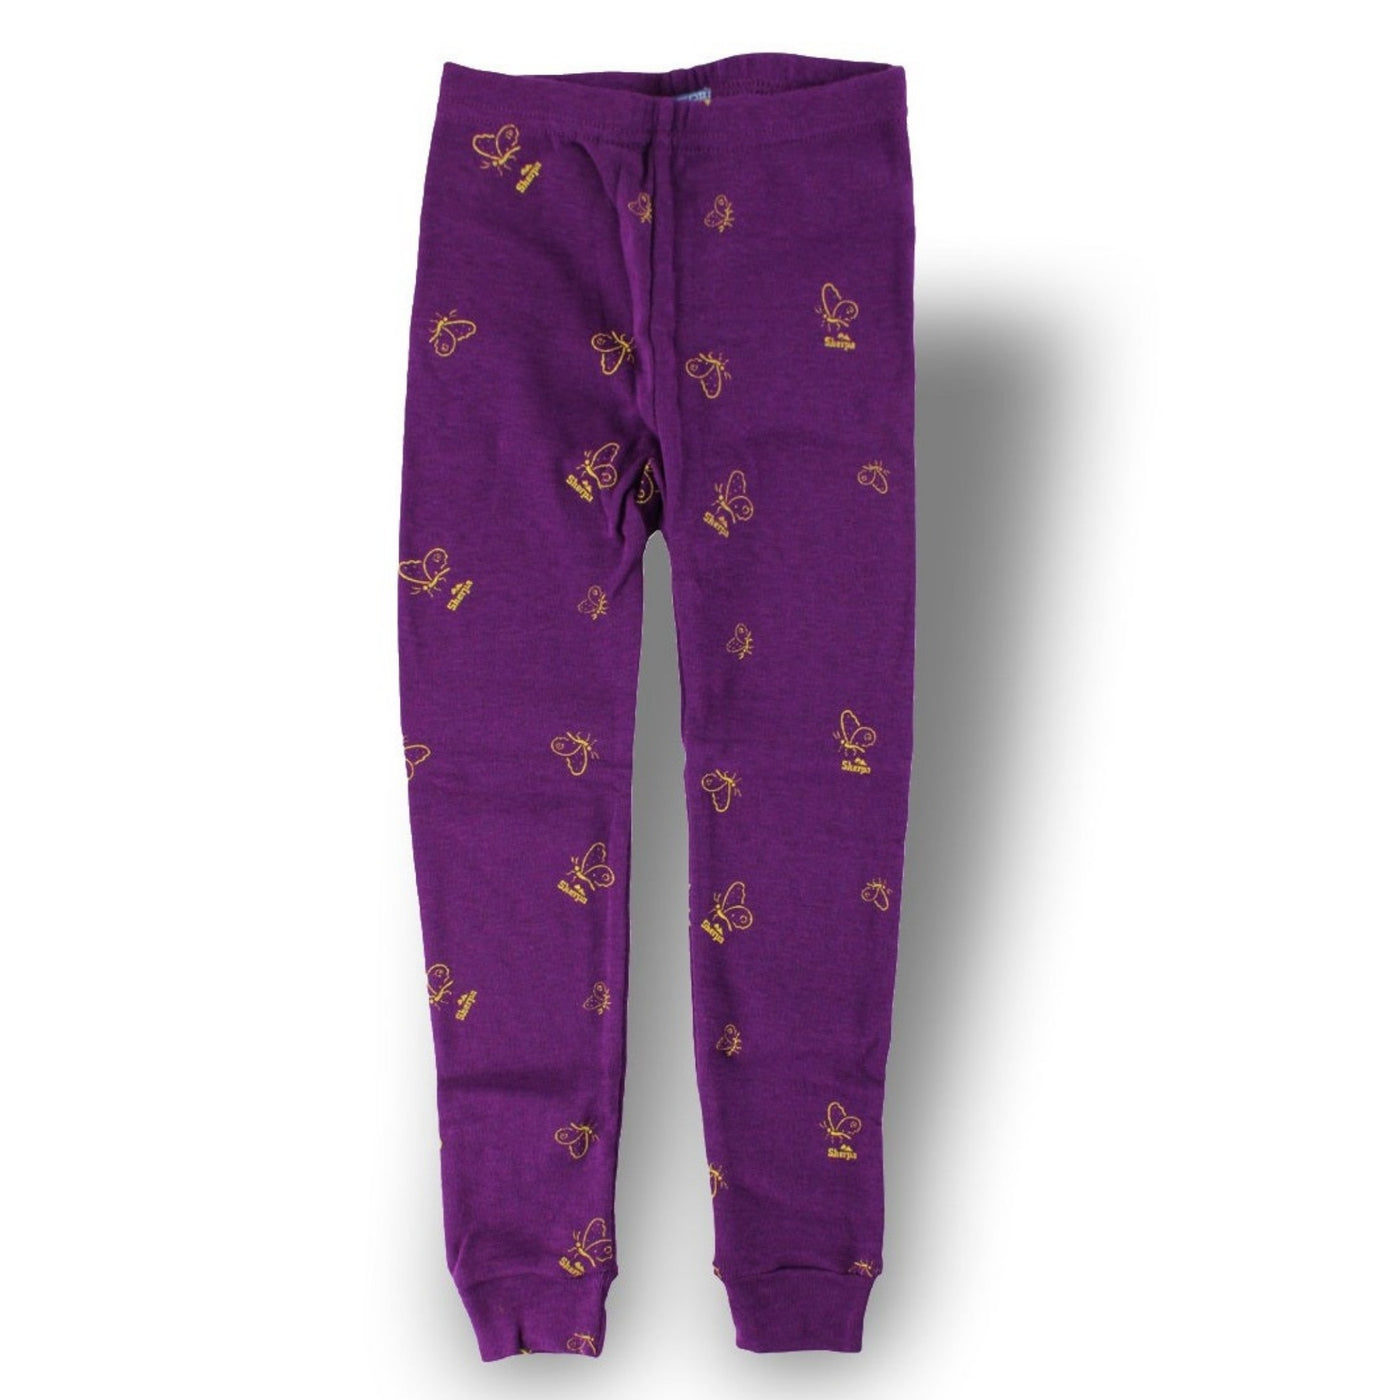 Sherpa Kids Thermal Pants - Purple Butterfly